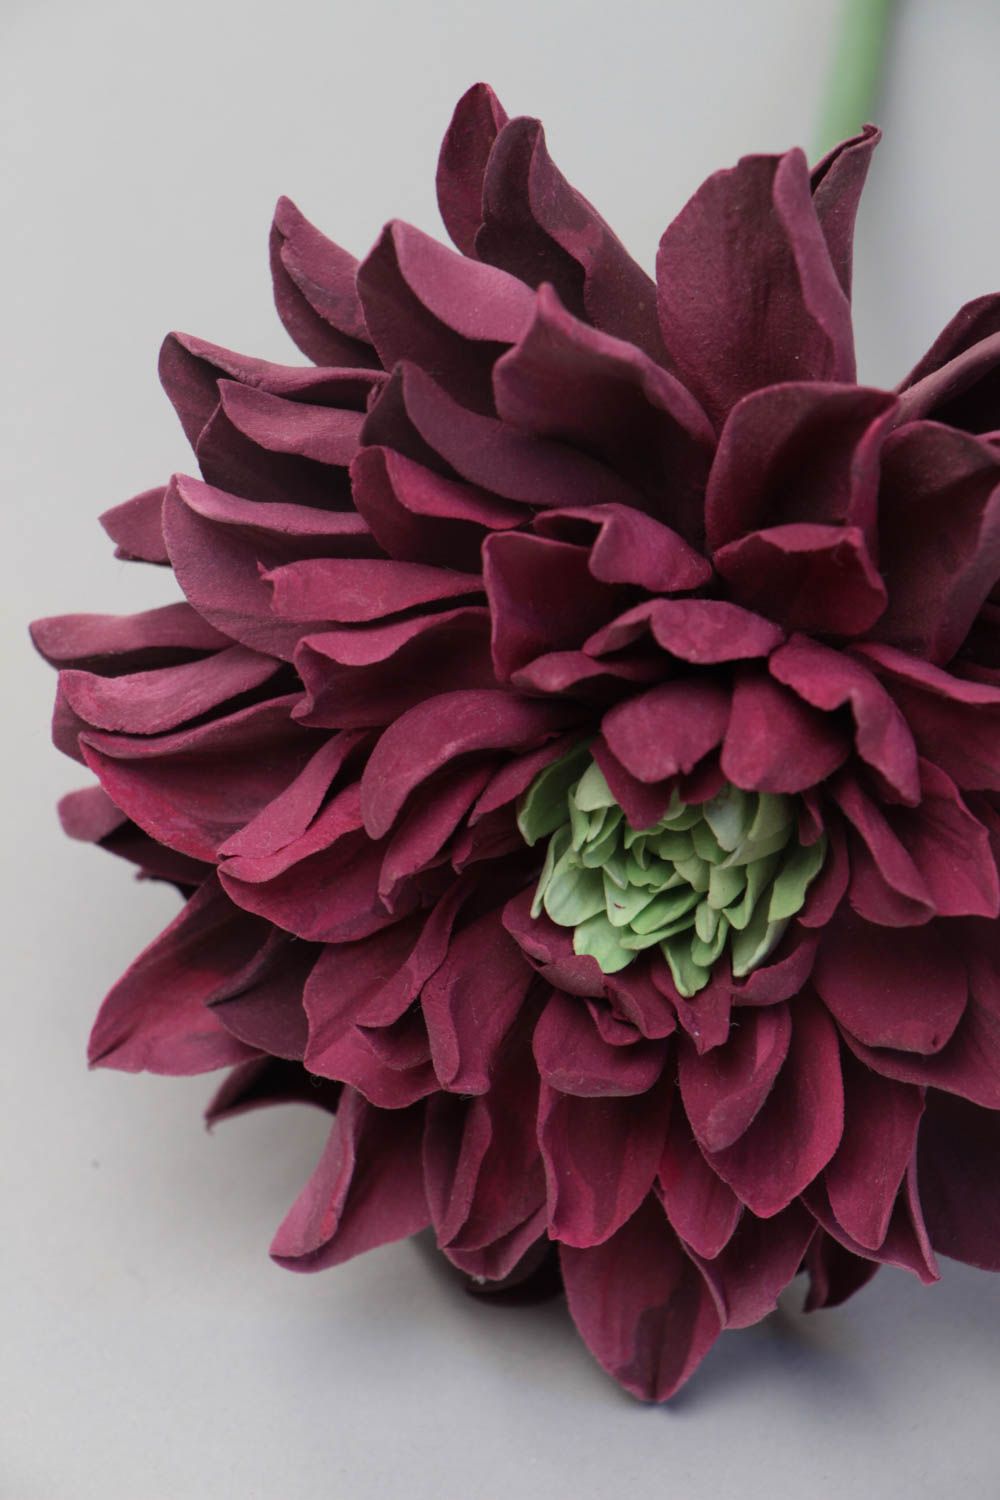 Handmade dekorative Blume Chrysantheme aus Polymerton mit langem Stiel schön foto 4